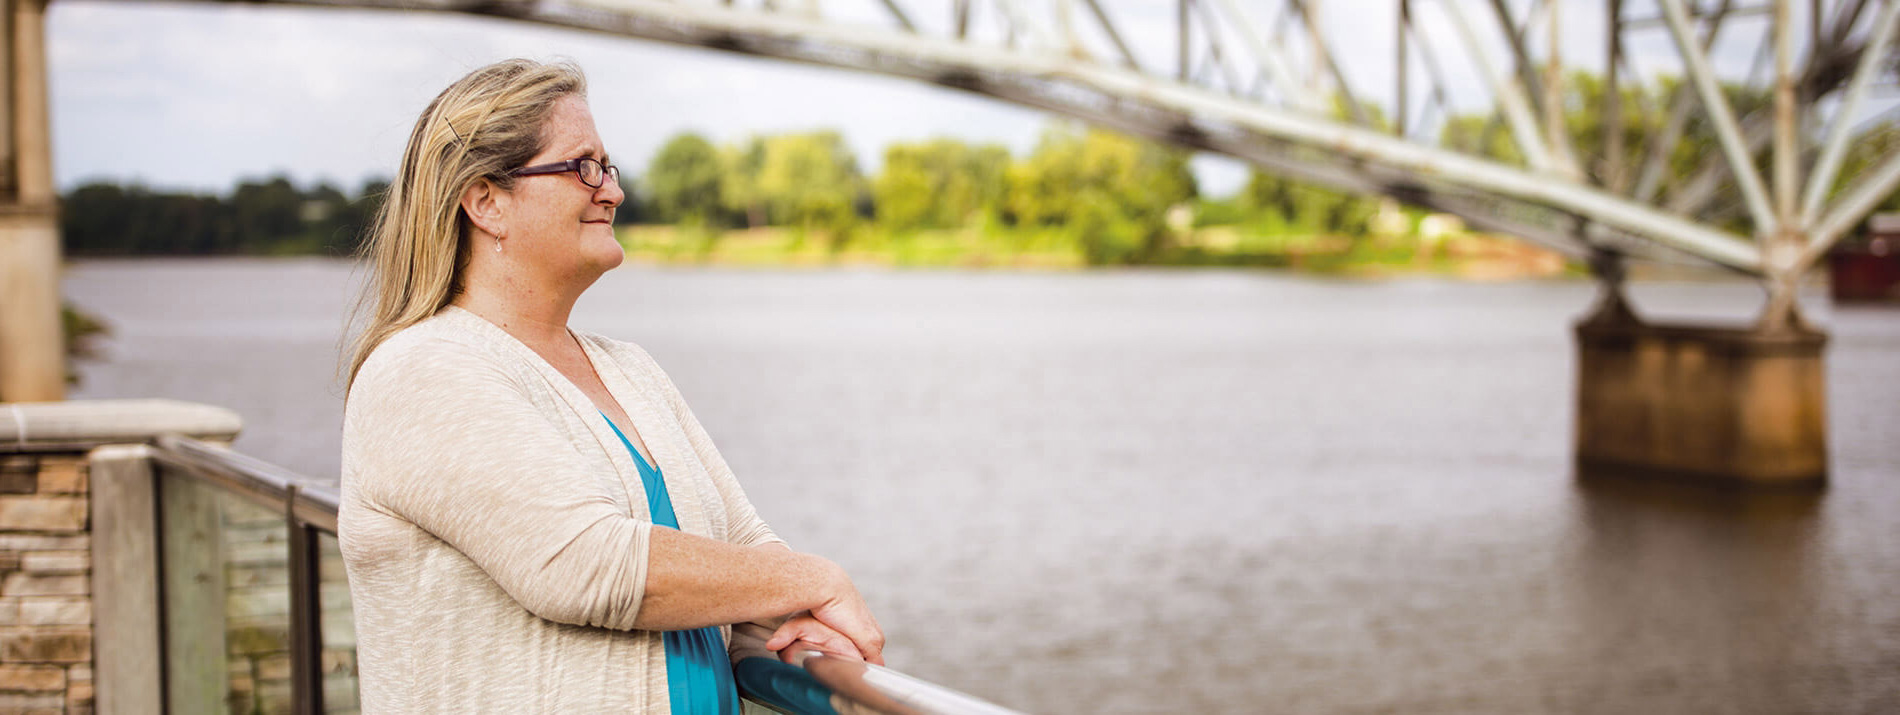 Μία γυναίκα που στέκεται δίπλα σε μία γέφυρα κοιτάζοντας μακριά, πάνω από ένα ποτάμι.